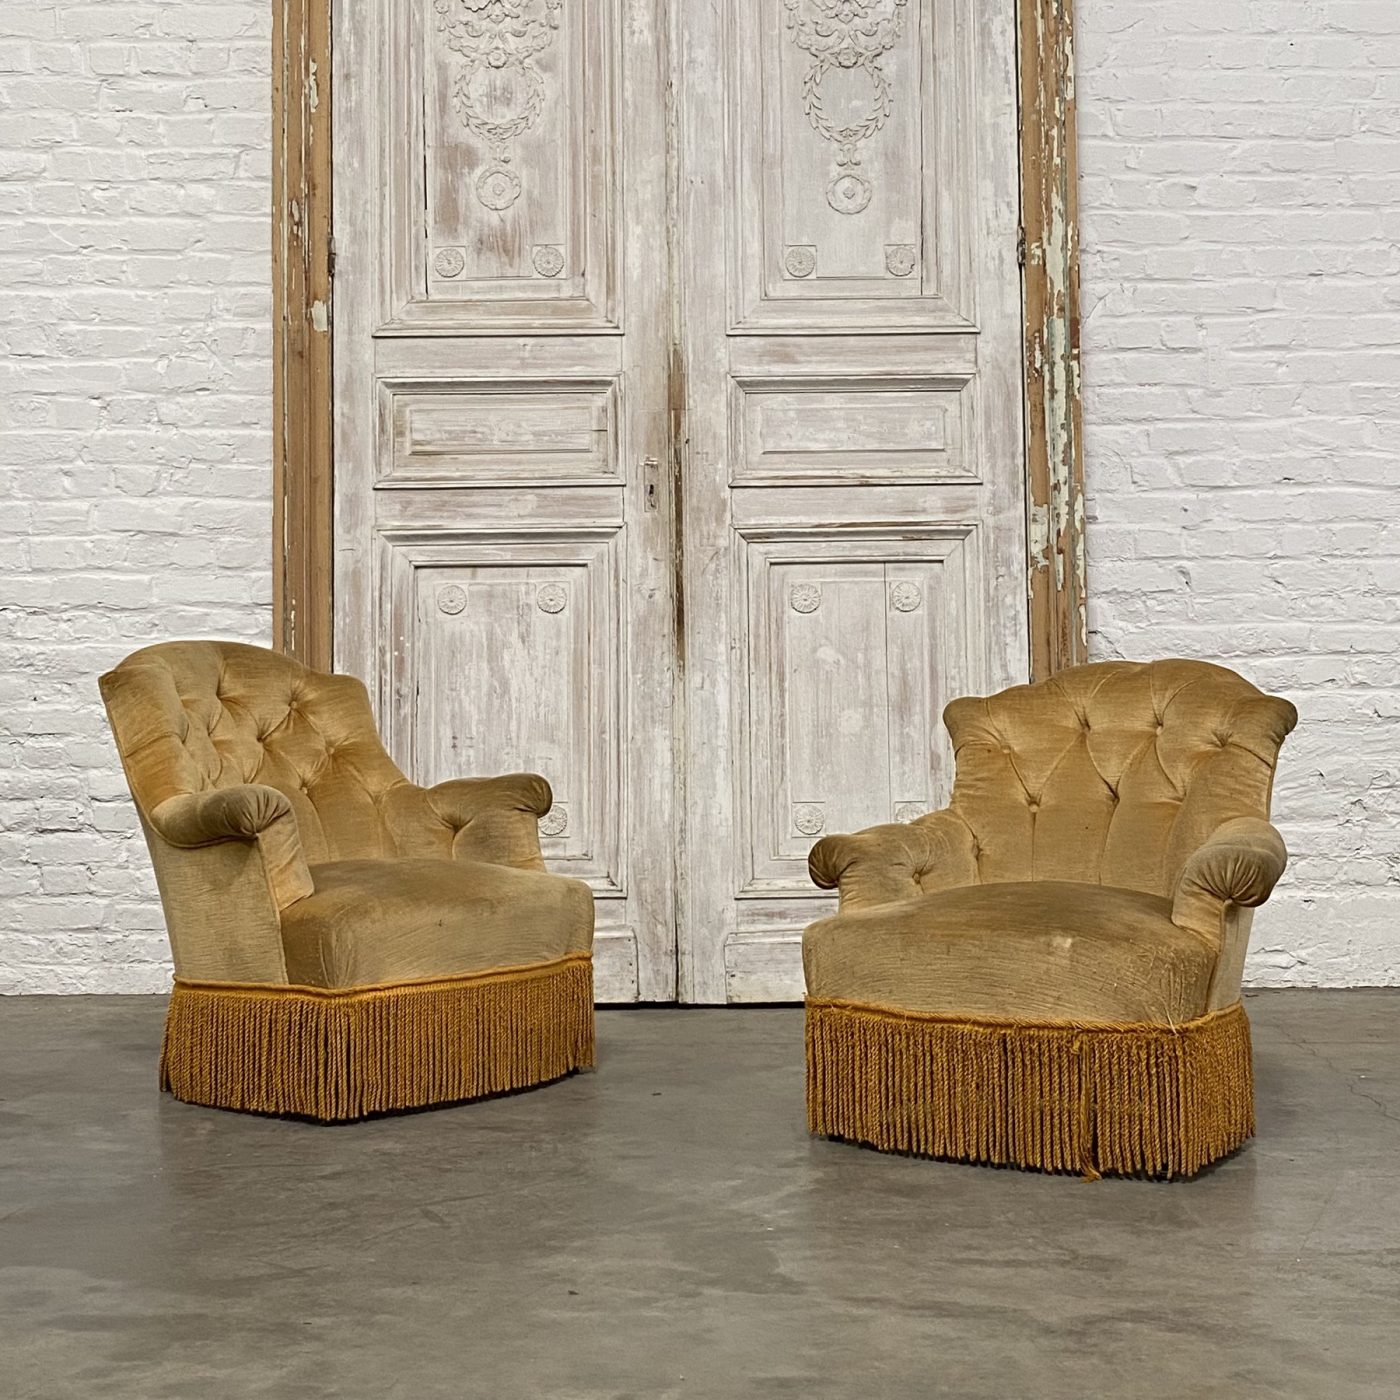 objet-vagabond-napoleon3-armchairs0001